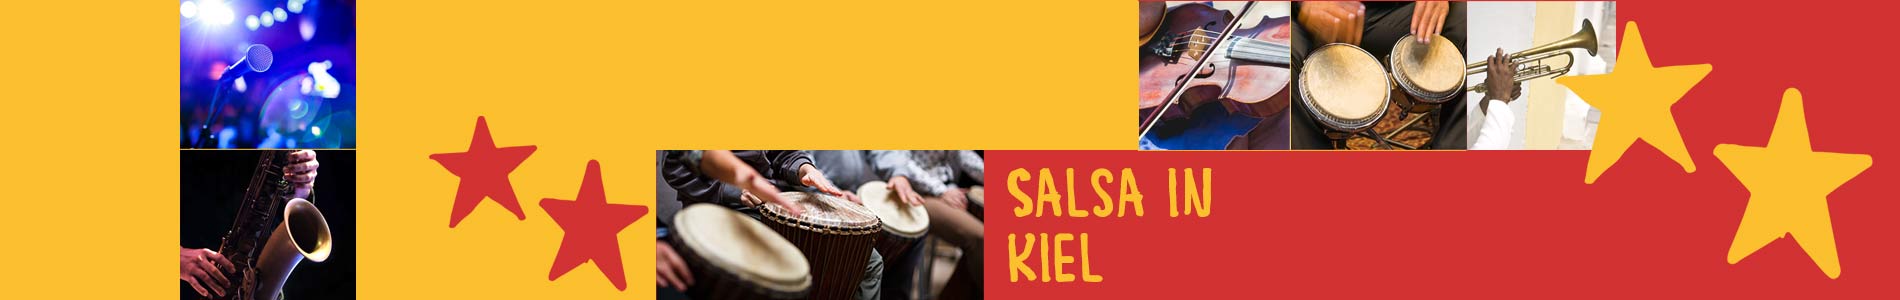 Salsa in Kiel – Salsa lernen und tanzen, Tanzkurse, Partys, Veranstaltungen